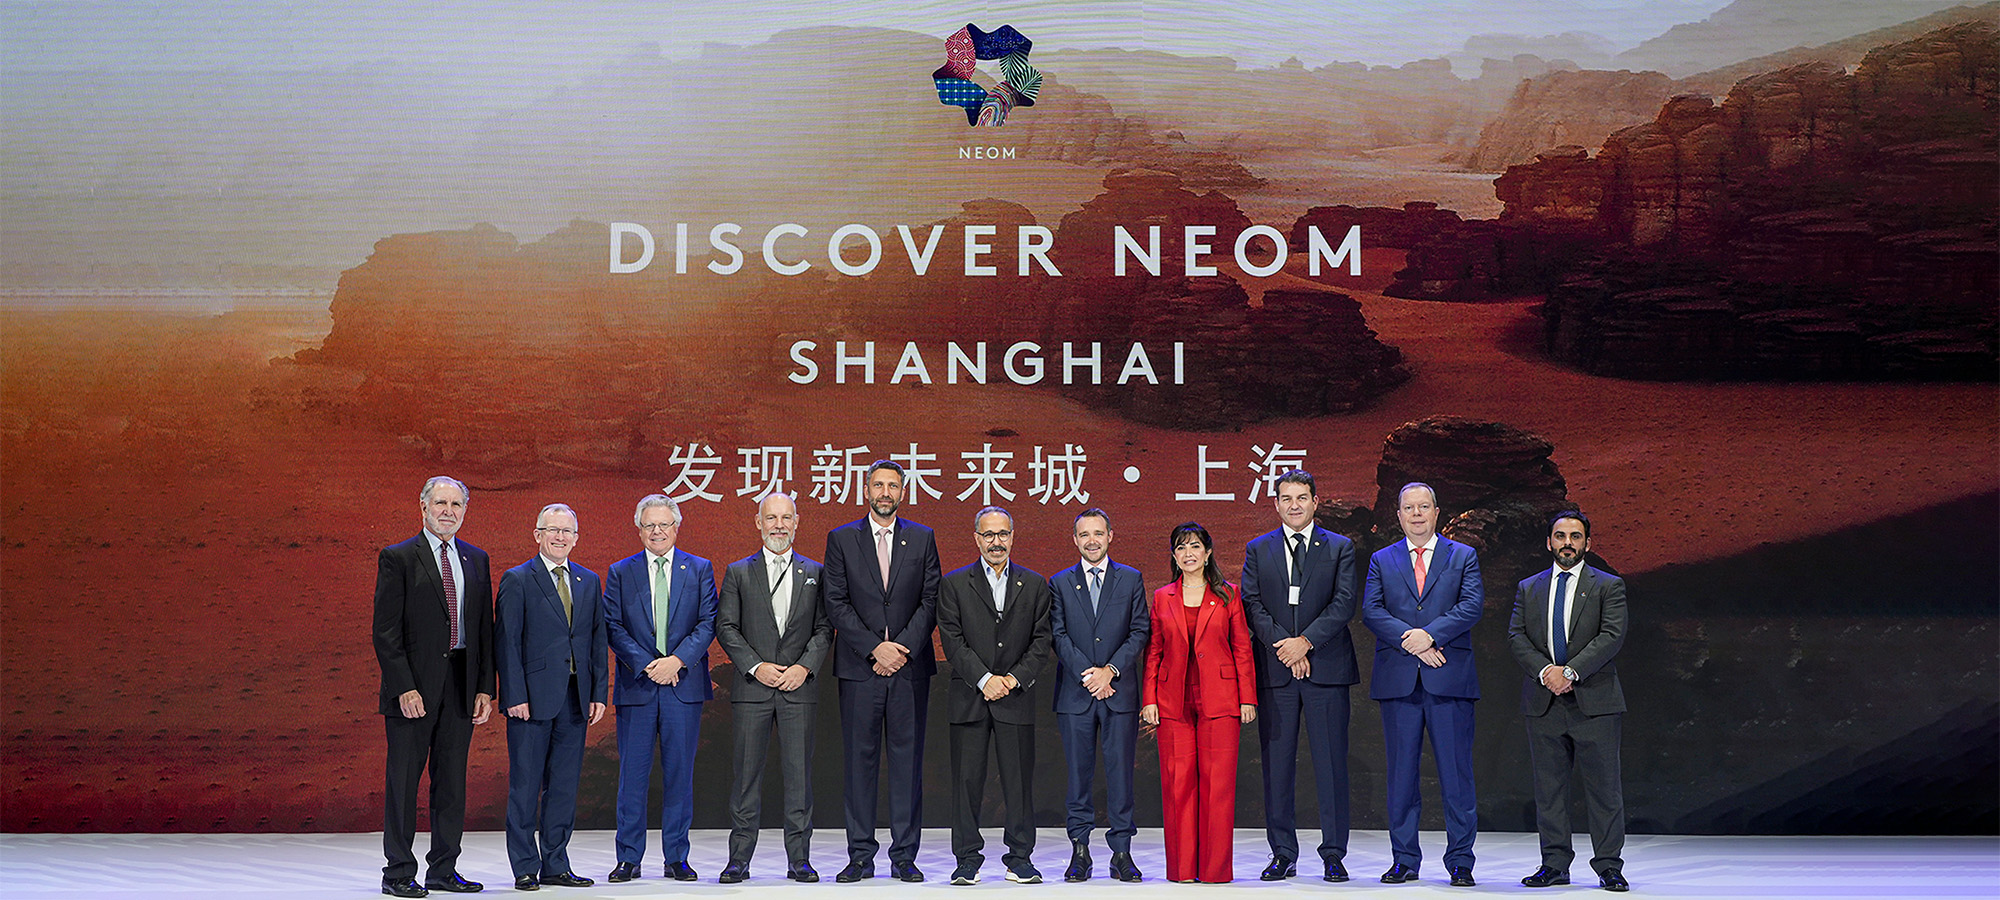 نيوم تستعرض فرصاً للشراكات والاستثمار أمام 500 من قادة الأعمال في بكين وشنغهاي